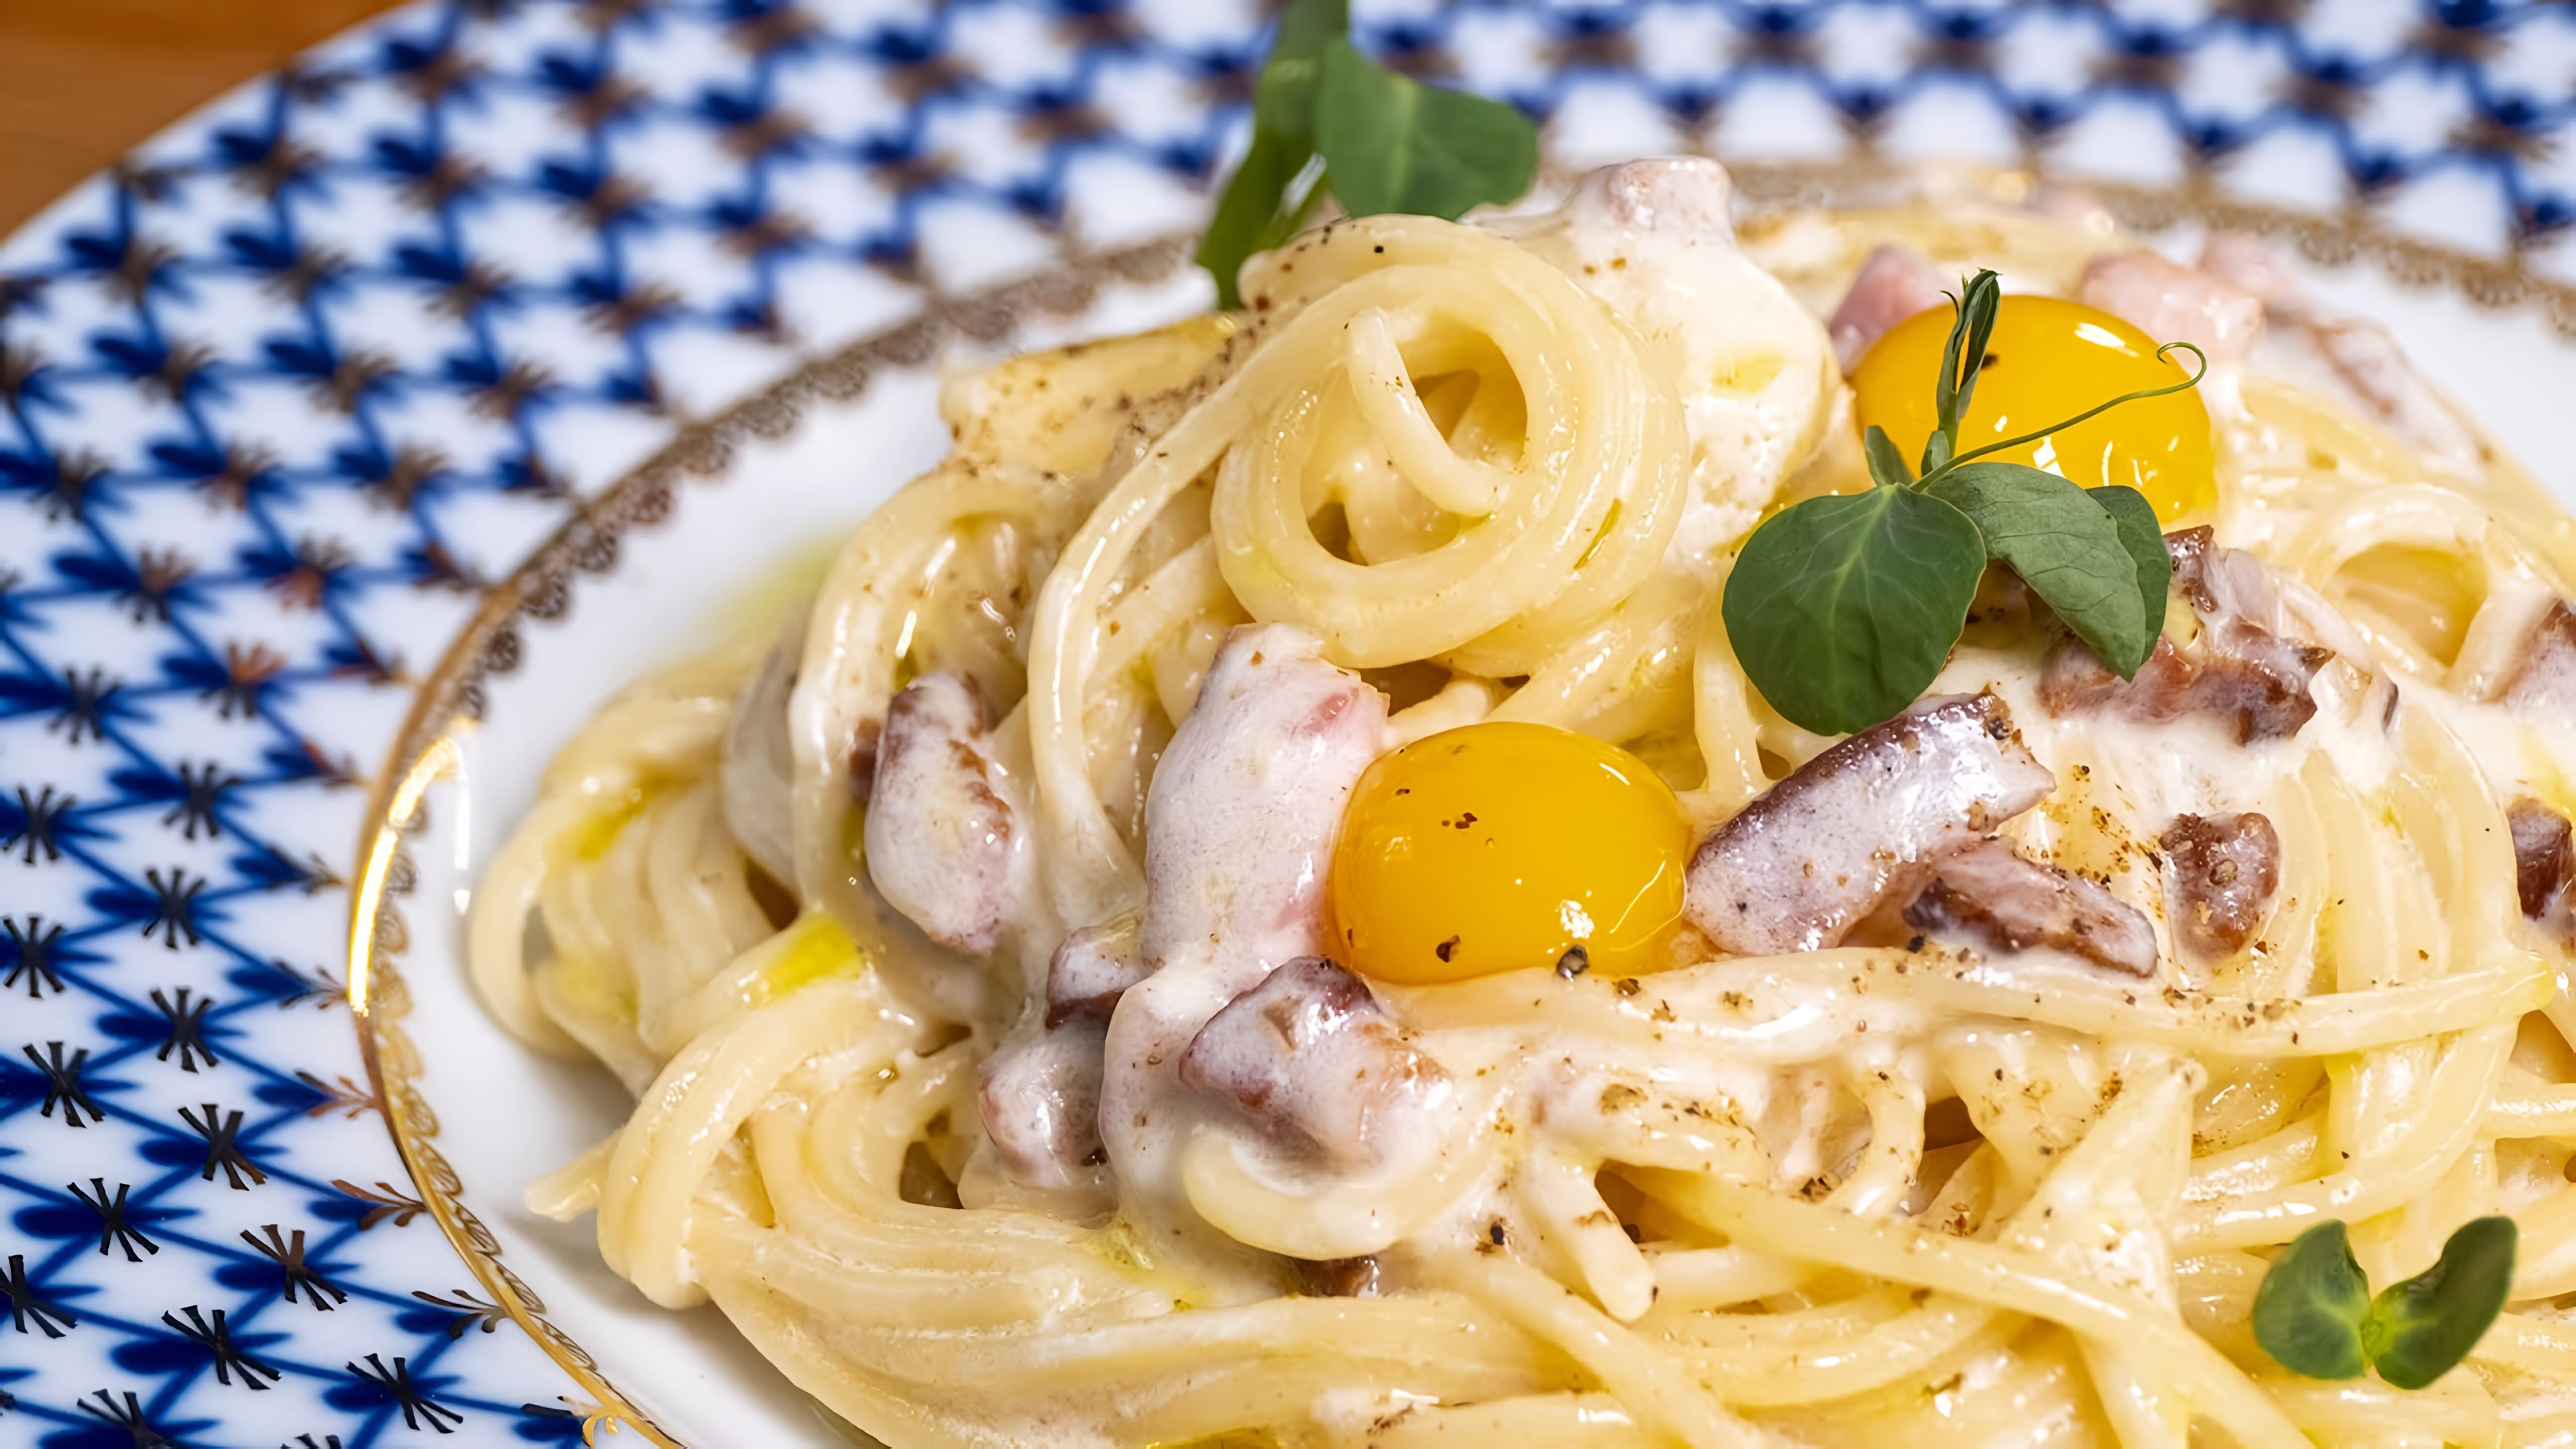 Видео посвящено приготовлению пасты карбонара, которая считается одним из лучших блюд итальянской кухни